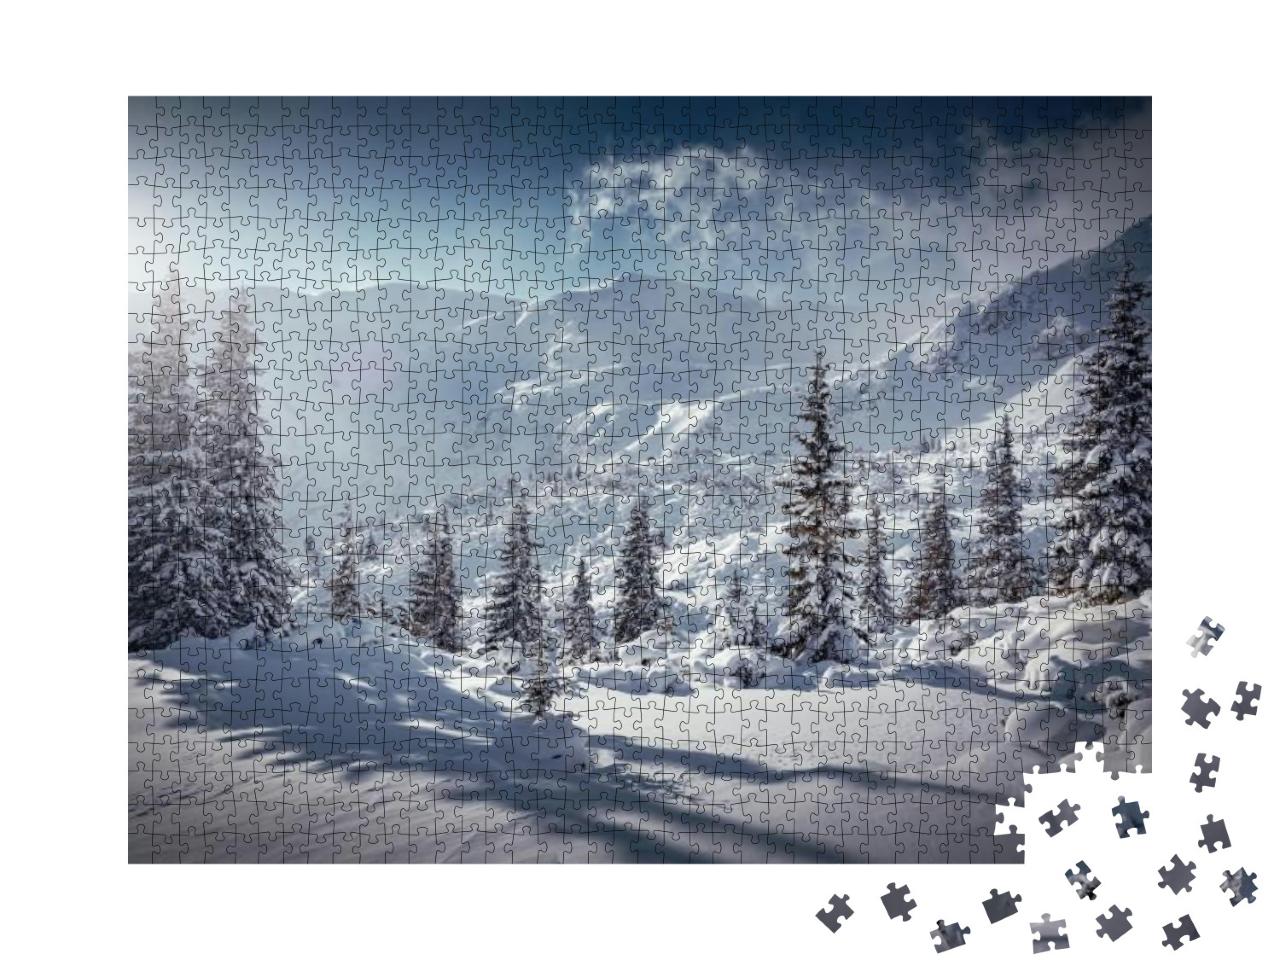 Puzzle 1000 Teile „Winterlandschaft“